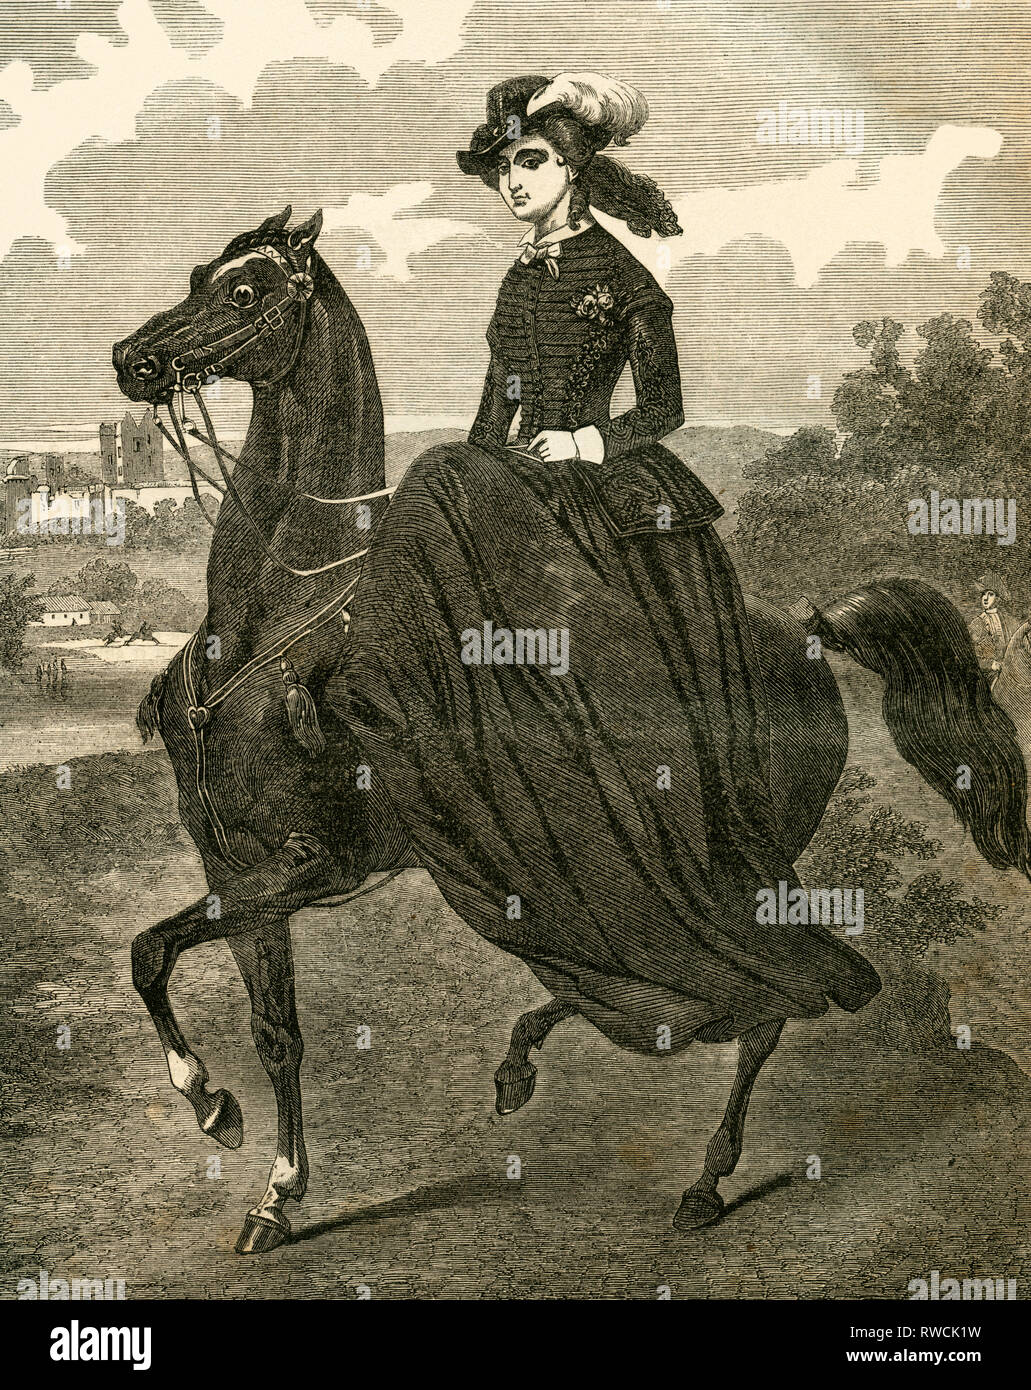 Eugénie Imperatrice del francese, equitazione, incisione su legno da: 'Illustrirtes Familien ufficiale ' (Famiglia rivista con le illustrazioni), pubblicato da A. H. Payne, 1853., Additional-Rights-Clearance-Info-Not-Available Foto Stock